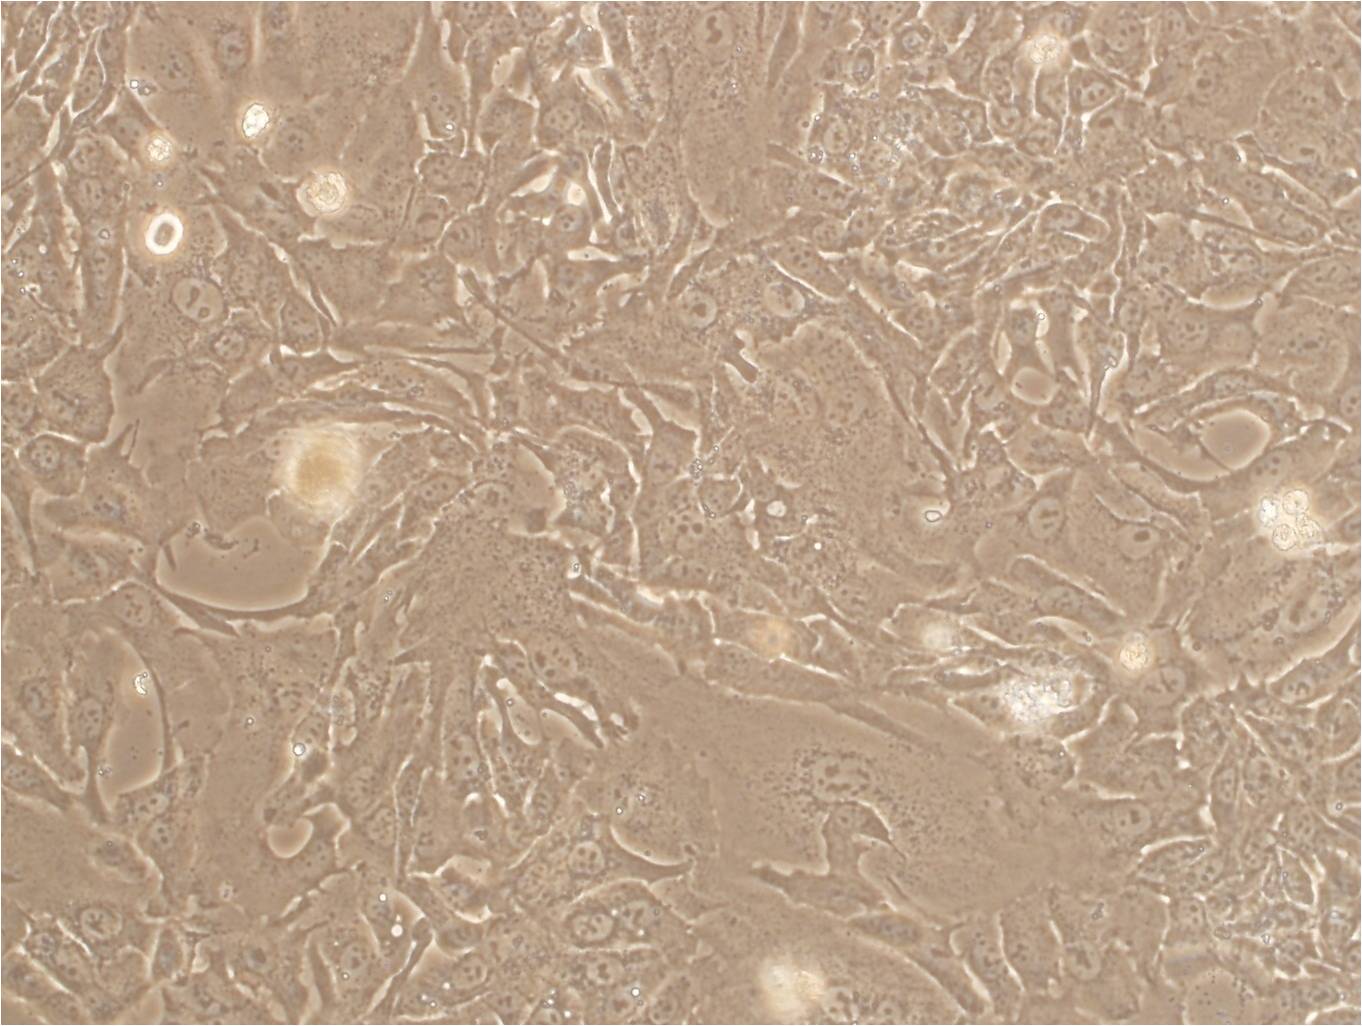 HT-1376 Adherent人膀胱癌细胞系,HT-1376 Adherent